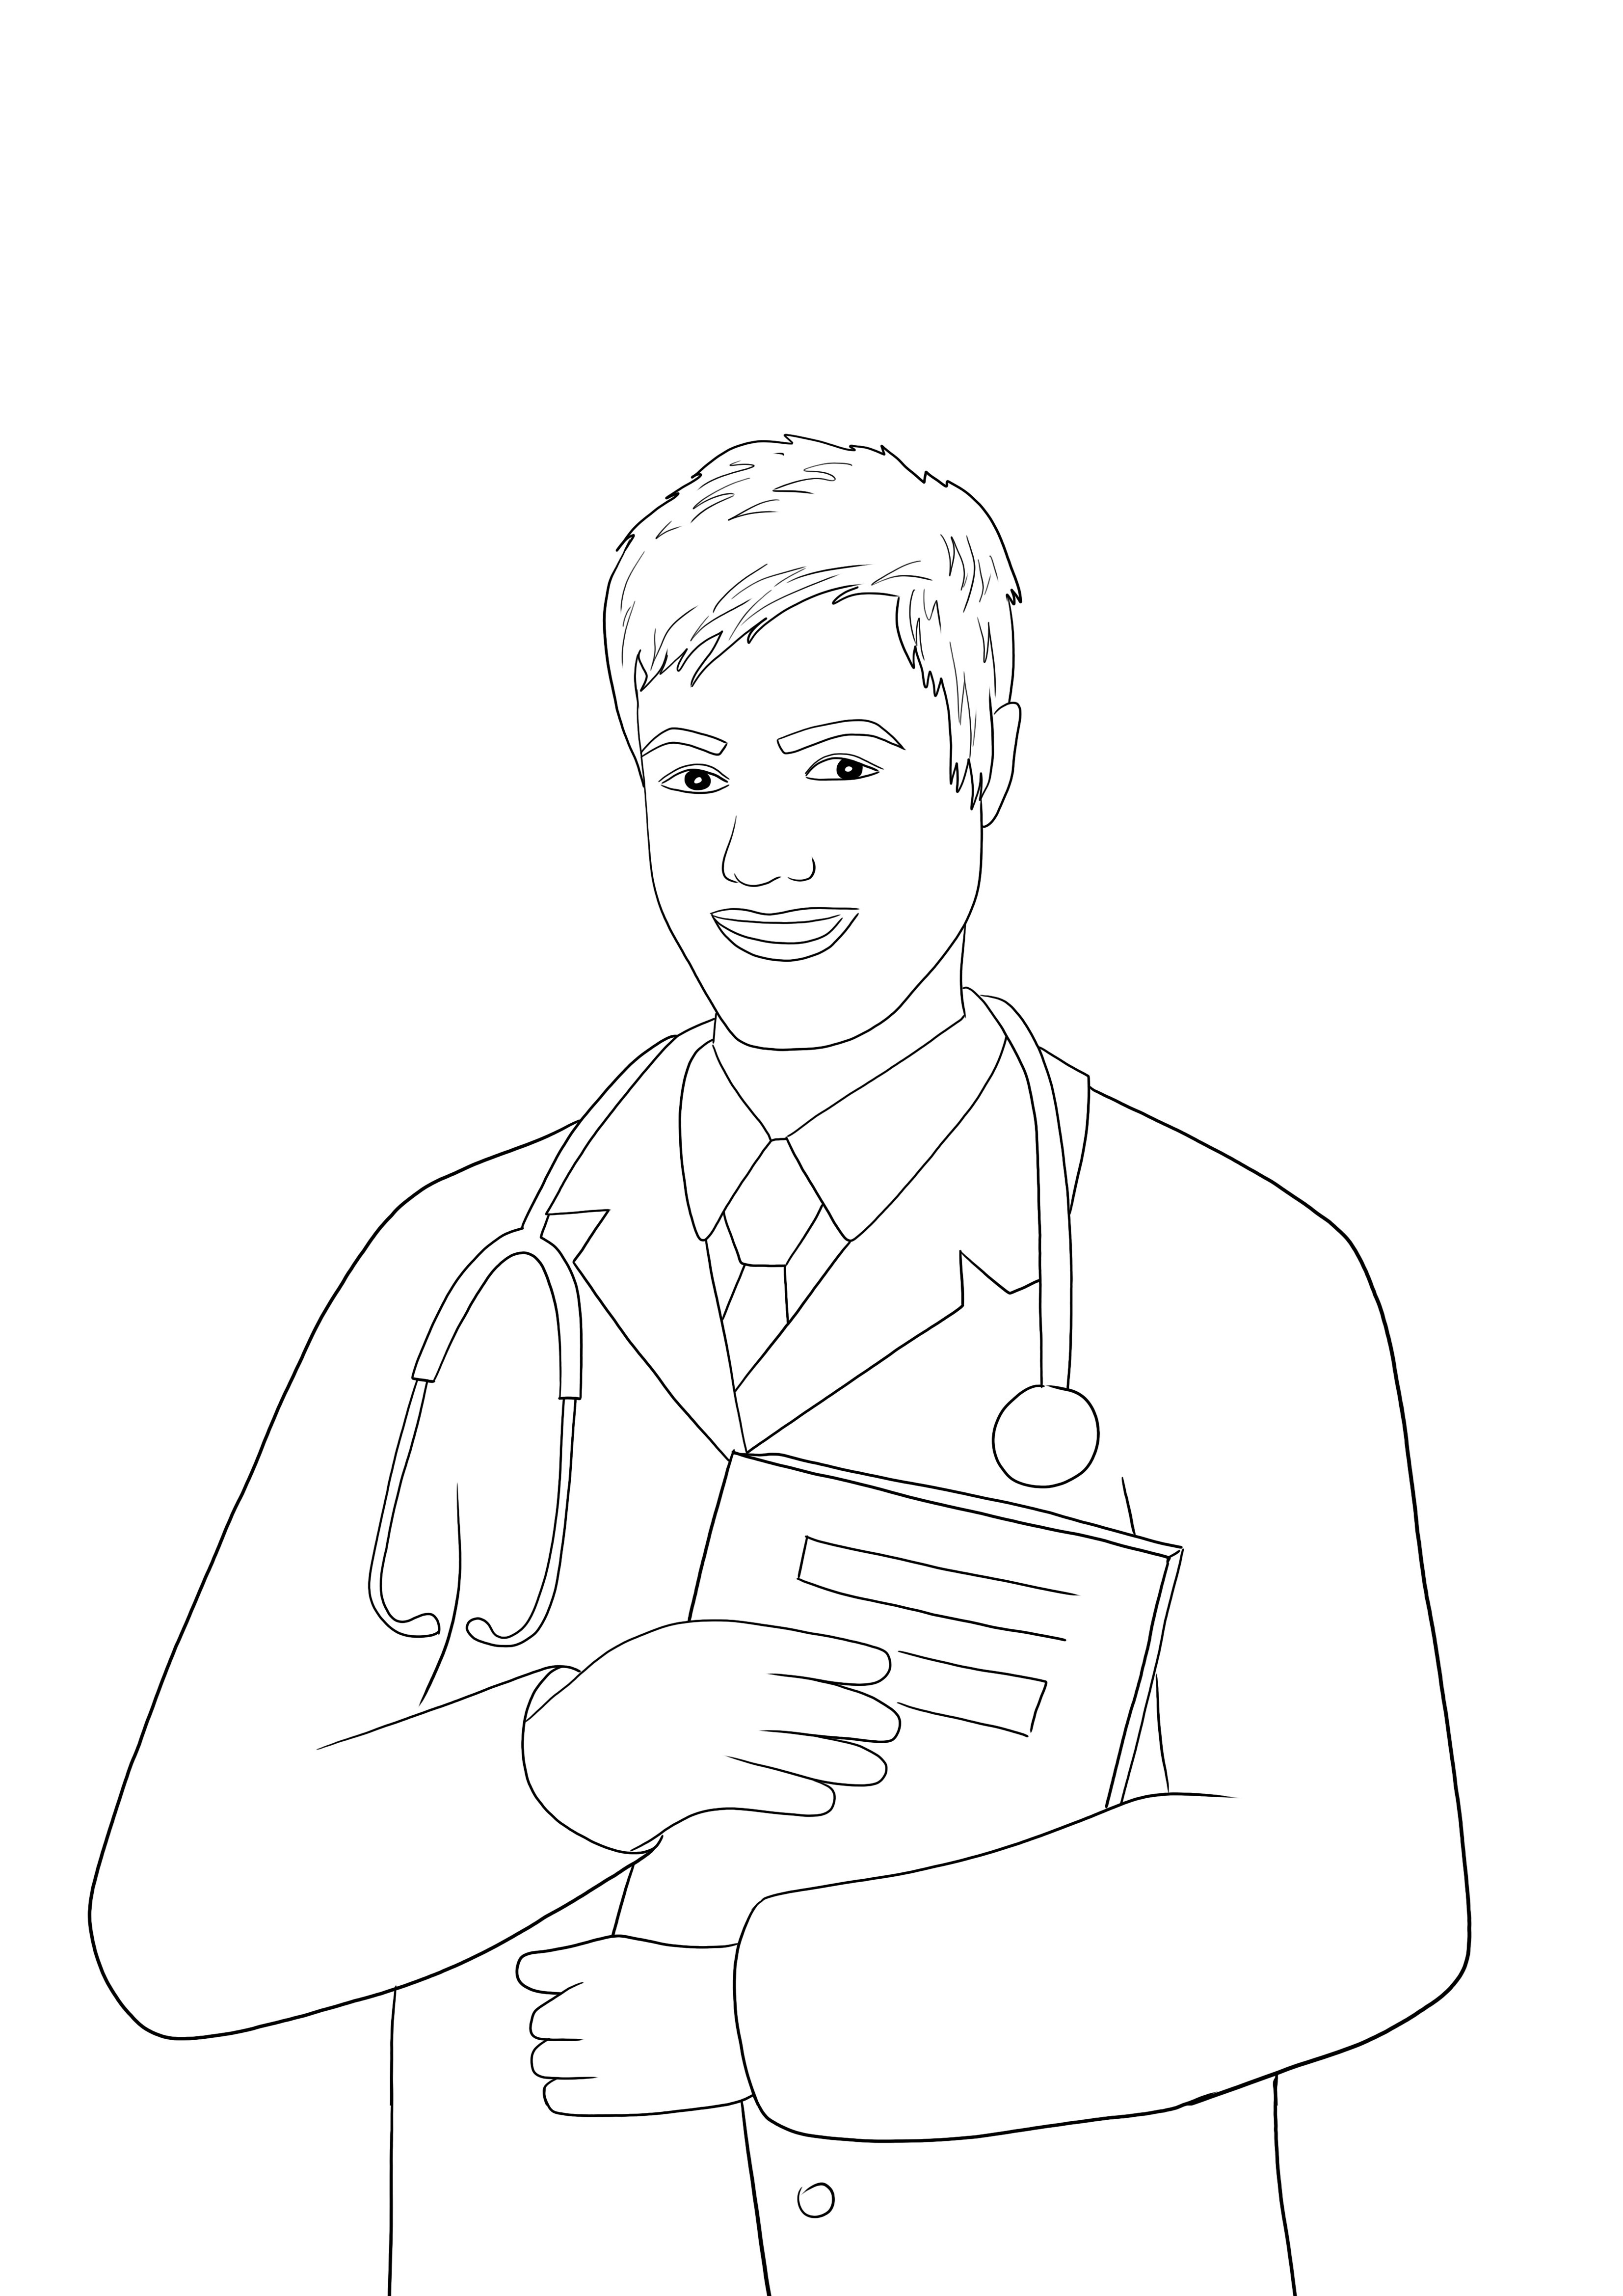 O imagine de colorat imprimabilă gratuită a unui bărbat doctor pentru a preda despre profesii